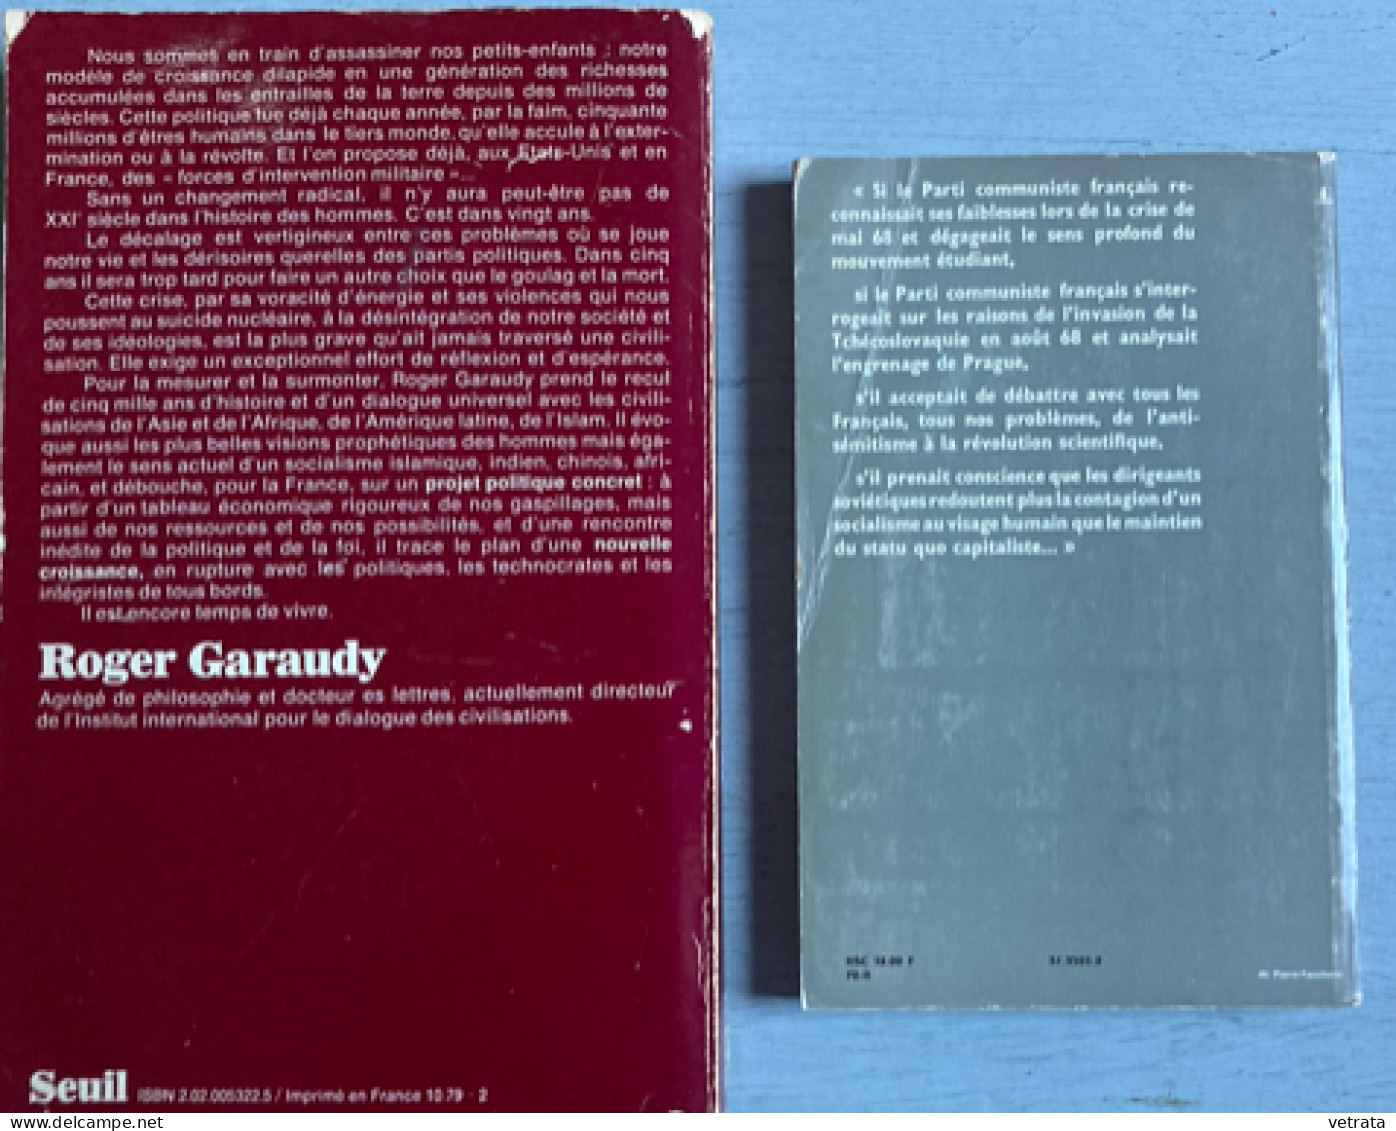 2 Livres De Roger Garaudy = Toute La Vérité (Grasset-1970) & Appel Aux Viants (Seuil-1979-plis Sur La Couverture) - Paquete De Libros